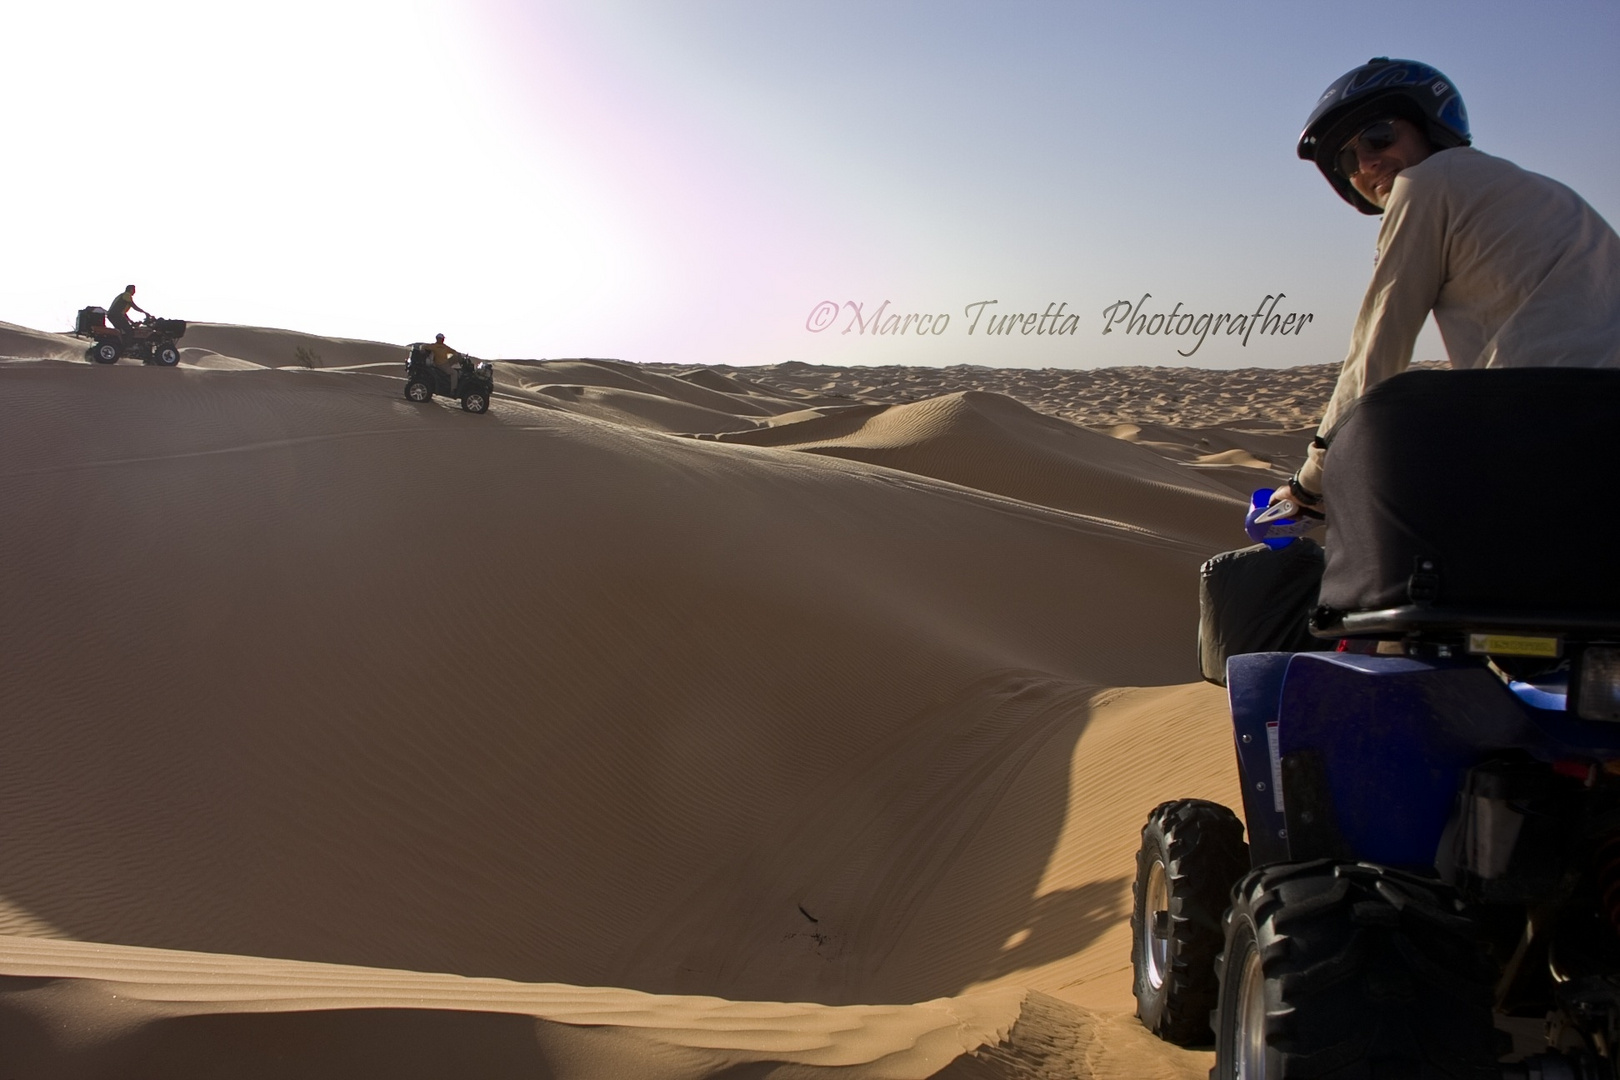 Sali e scendi tra le dune del Sahara....